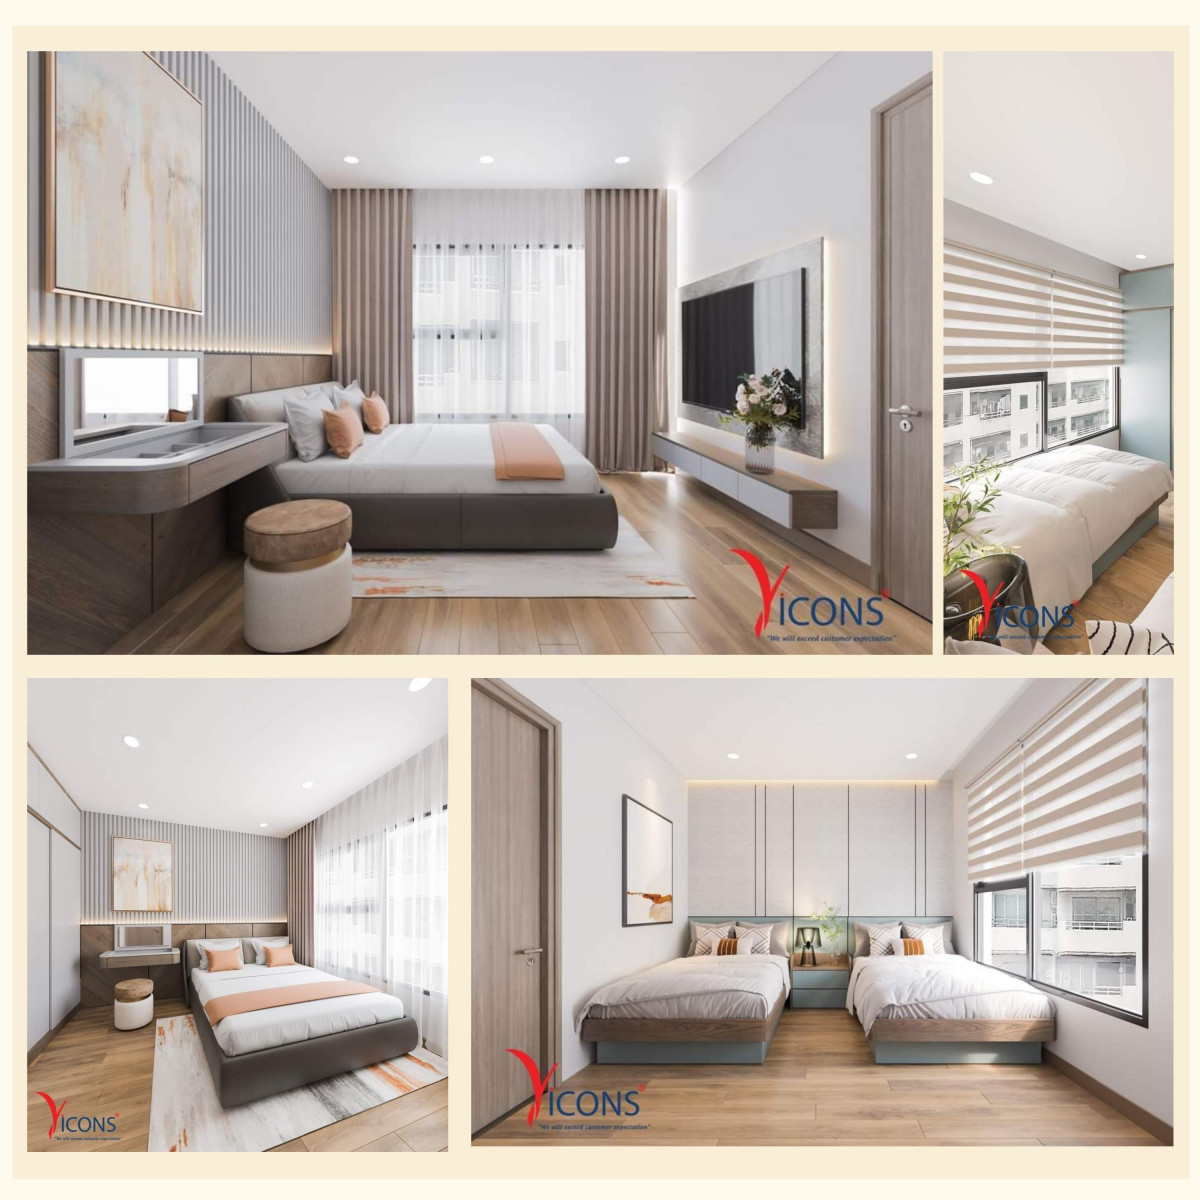 Thiết kế khu vực phòng ngủ căn hộ 69m2 Vinhomes Grand Park - Mẫu 2